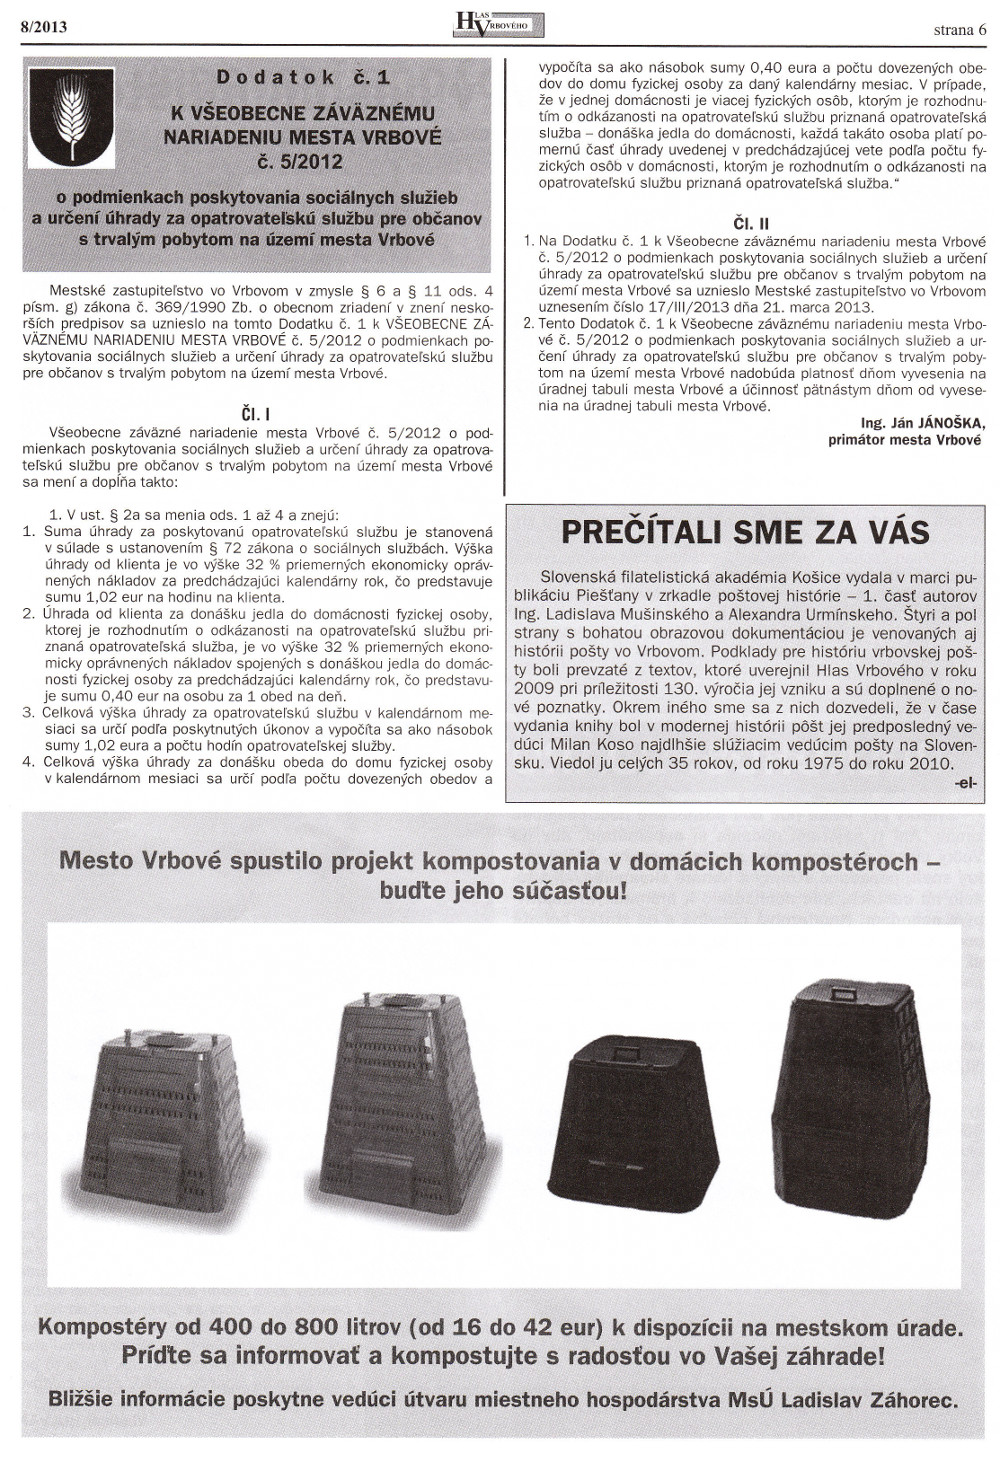 Hlas Vrbového 08/2013, strana 6